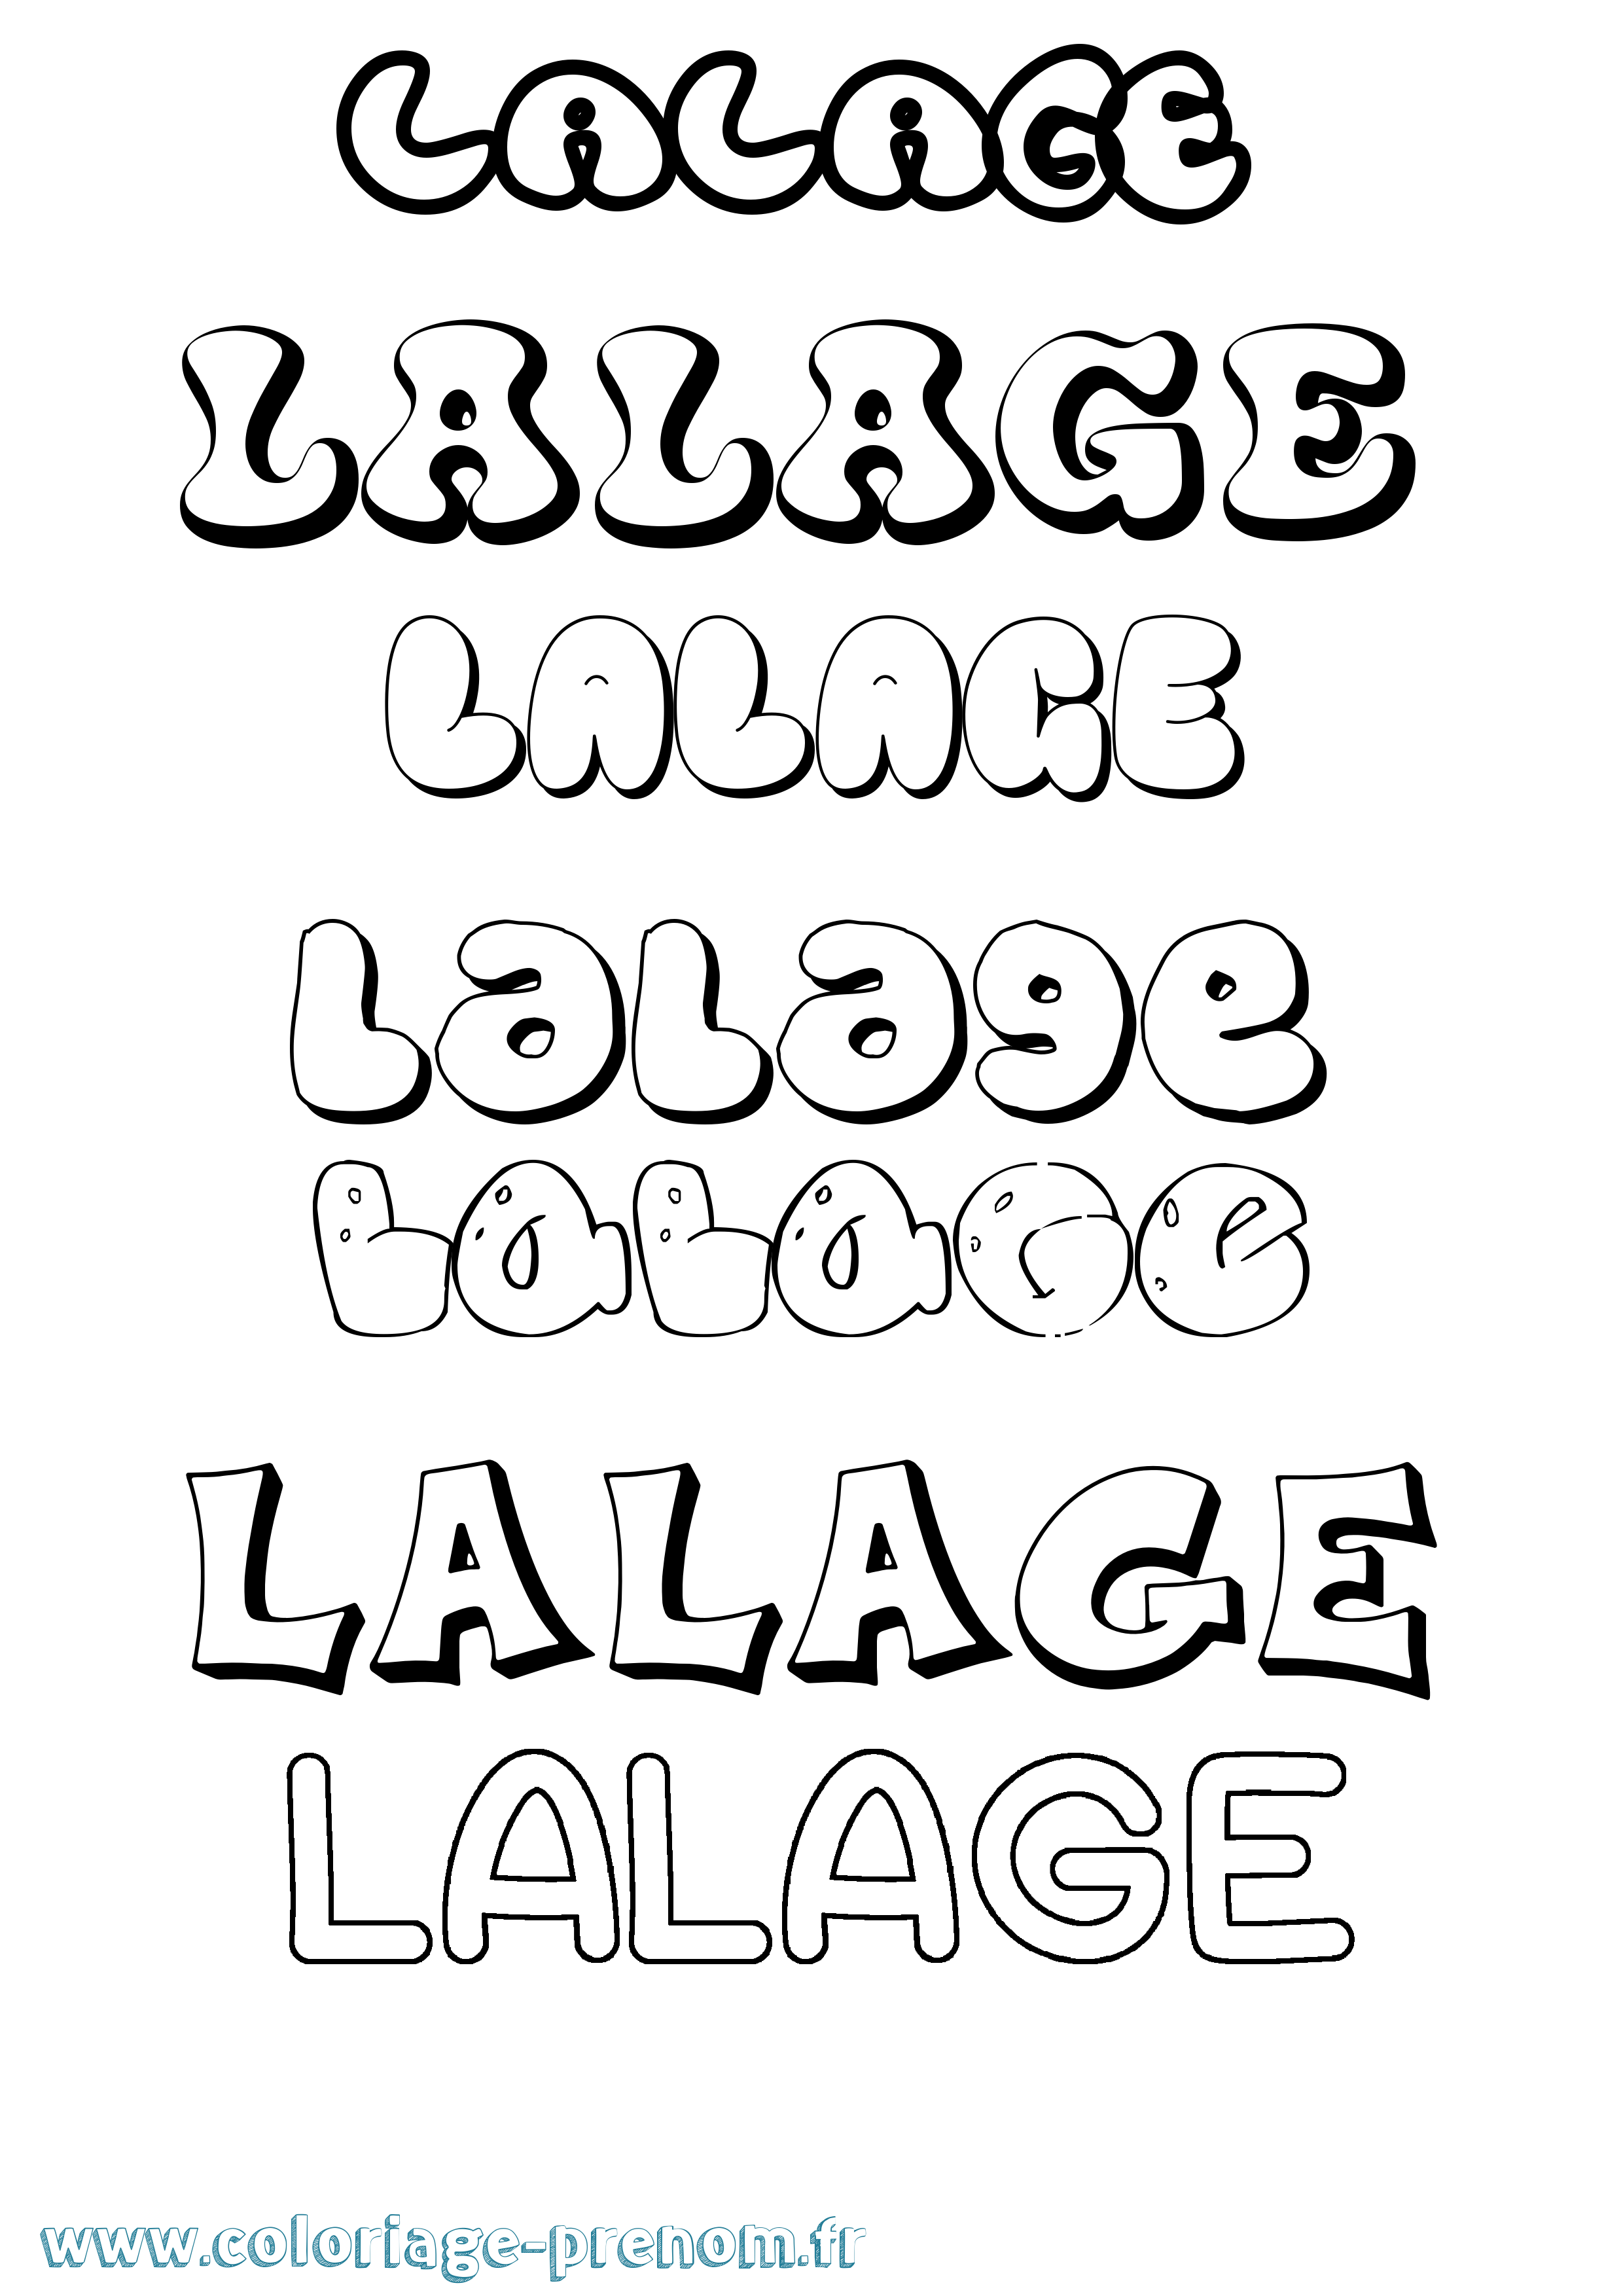 Coloriage prénom Lalage Bubble